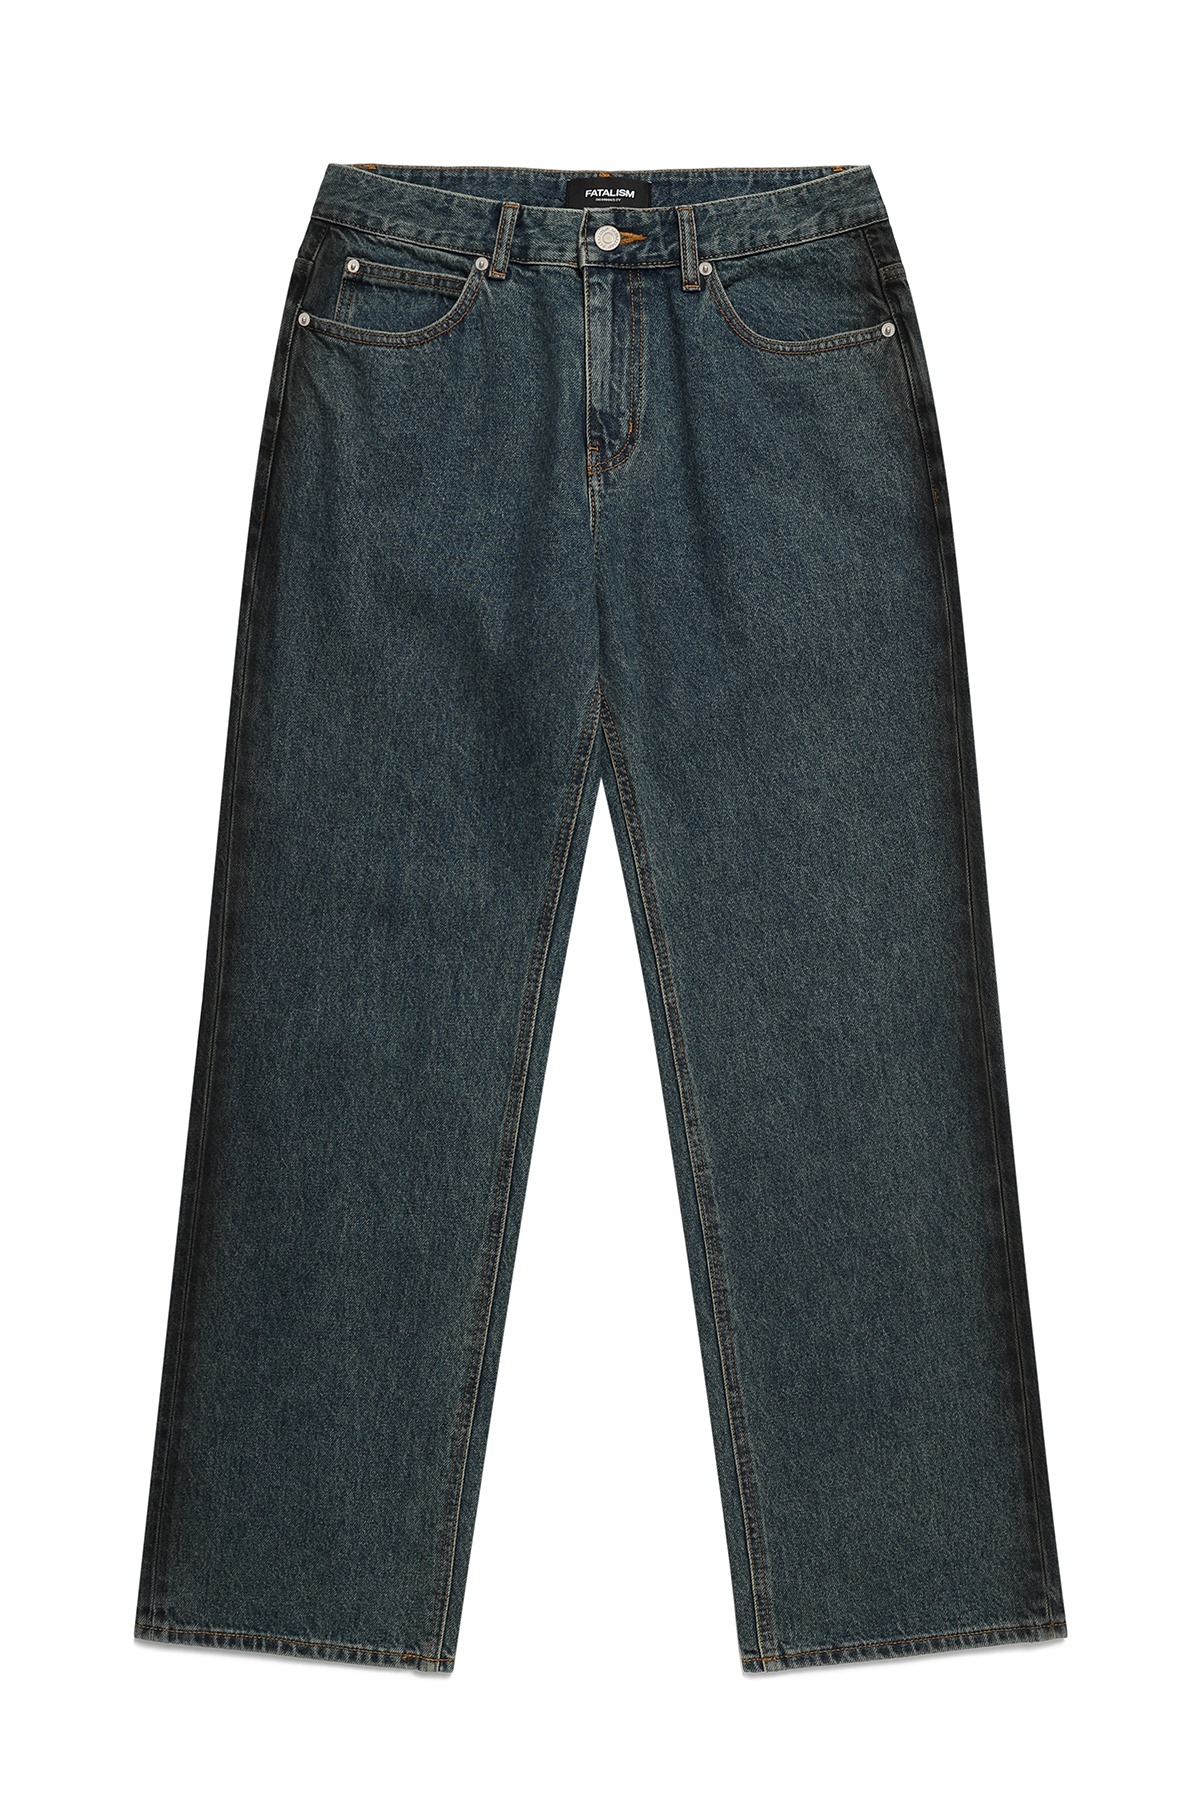 #0307 Retro bluish green wide jeans